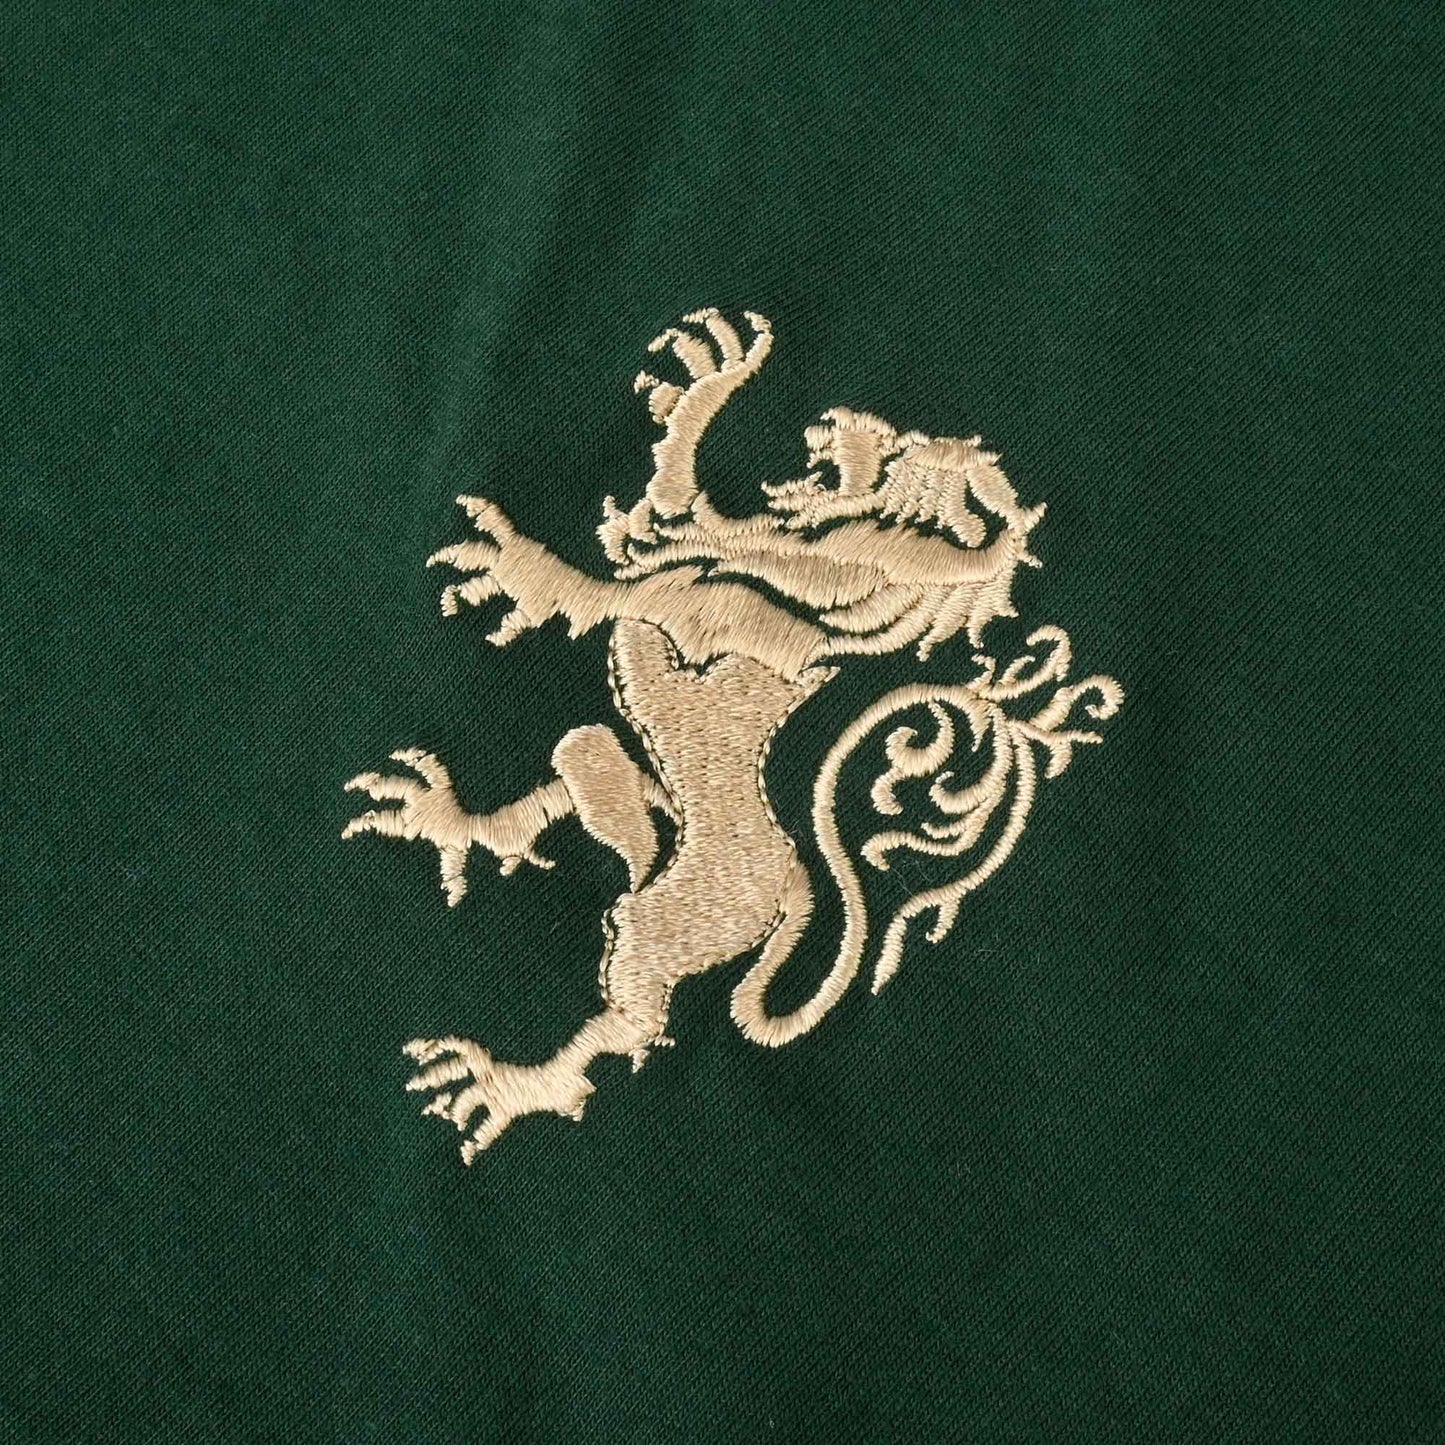 Polo Republica Men's Leo Crest Embroidered Crew Neck Tee Shirt Men's Tee Shirt Polo Republica 